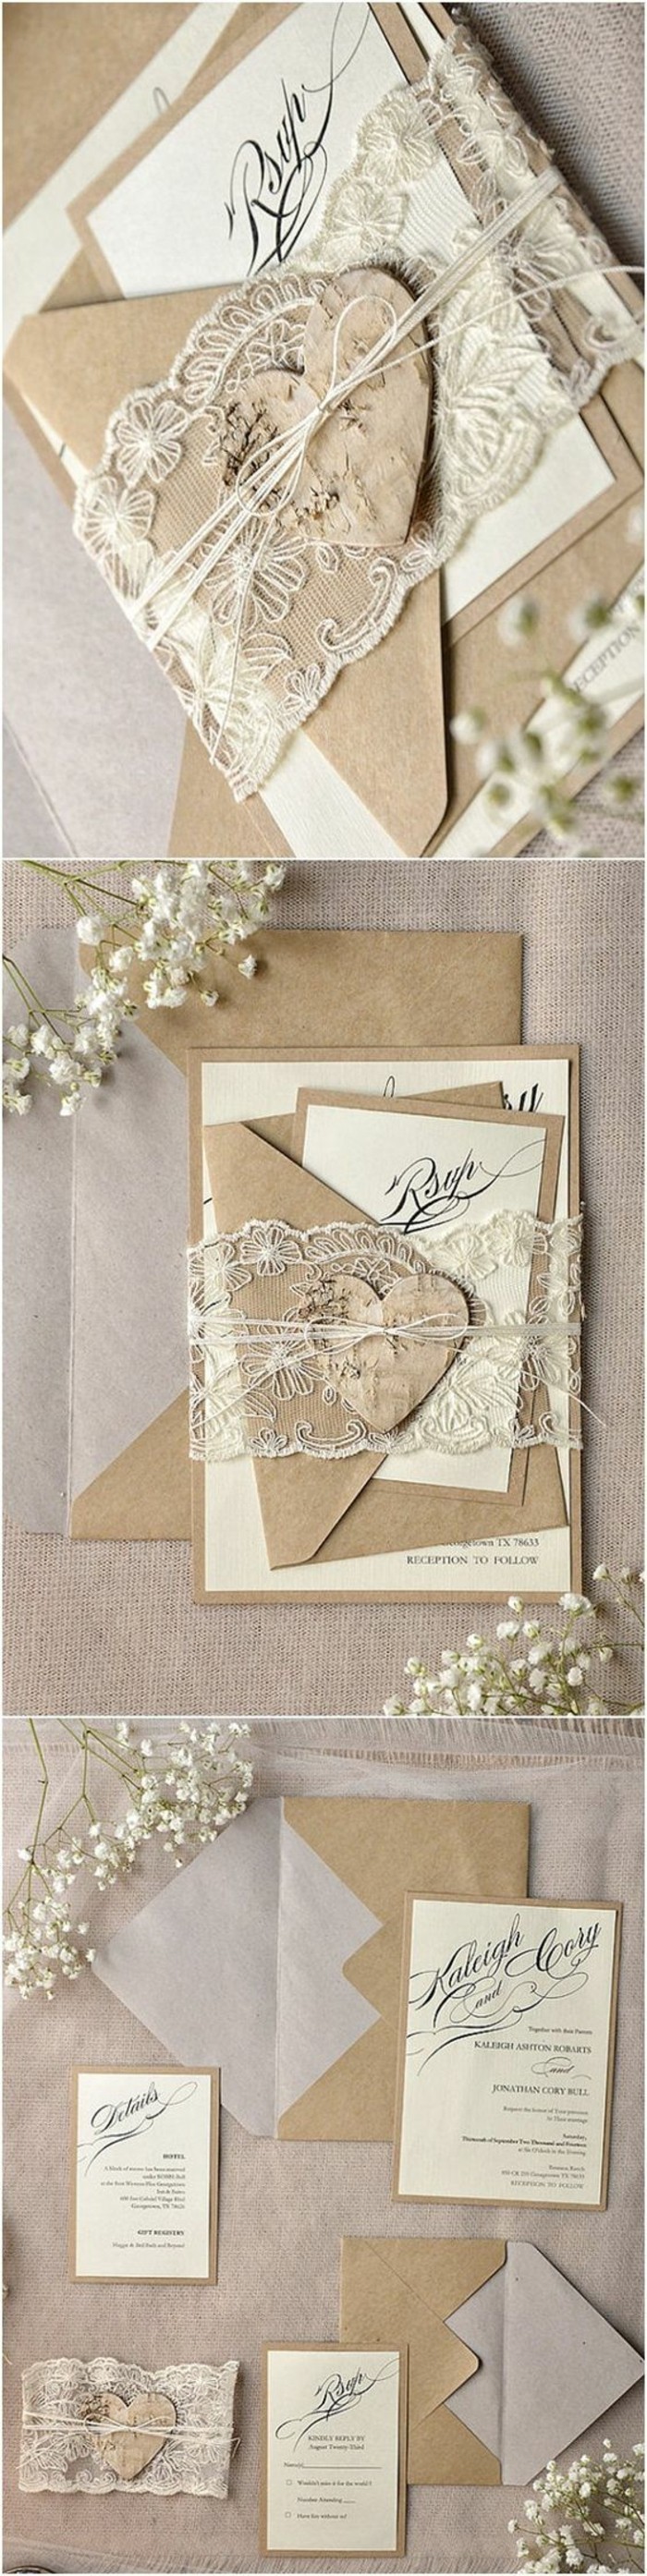 faire-part-mariage-champetre-idee-pour-carte-d-invitation-avec-fleurs-seches-blancs